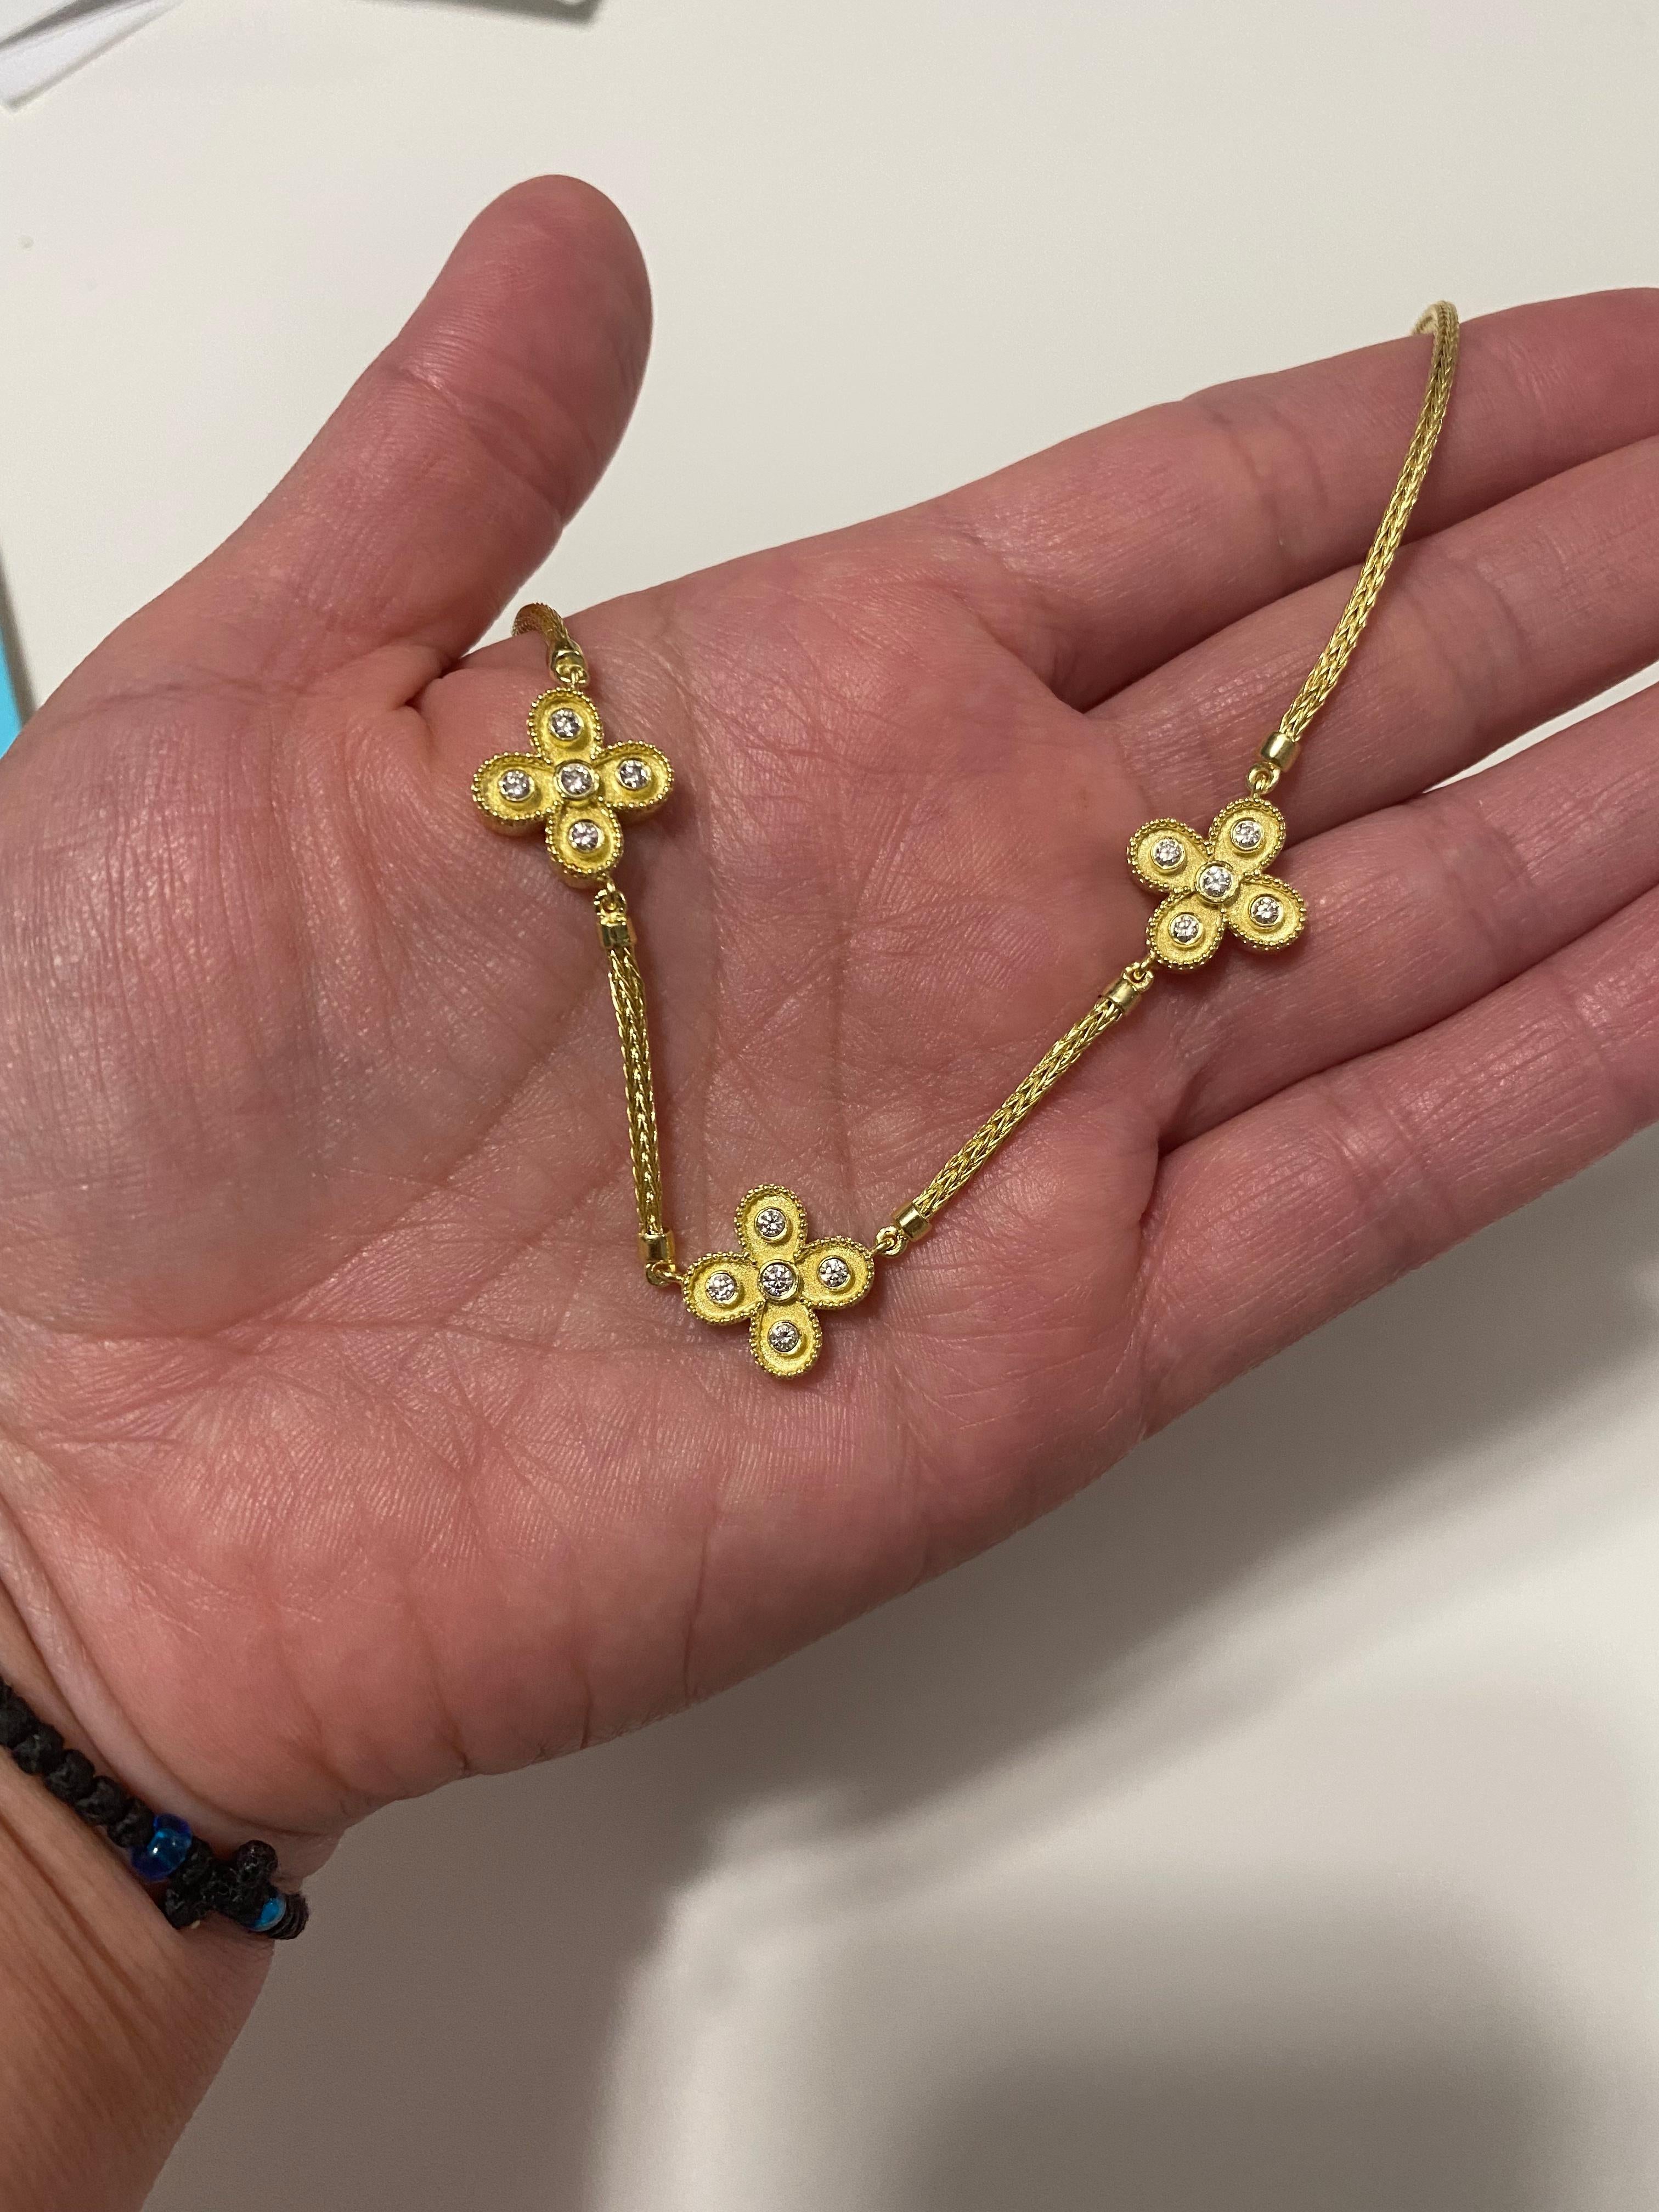 Ce collier réversible en or 18 carats du designer S.Georgios est une combinaison de trois croix décorées de diamants et d'une chaîne en corde. Les croix sont décorées de façon microscopique dans le style byzantin avec un travail de granulation et